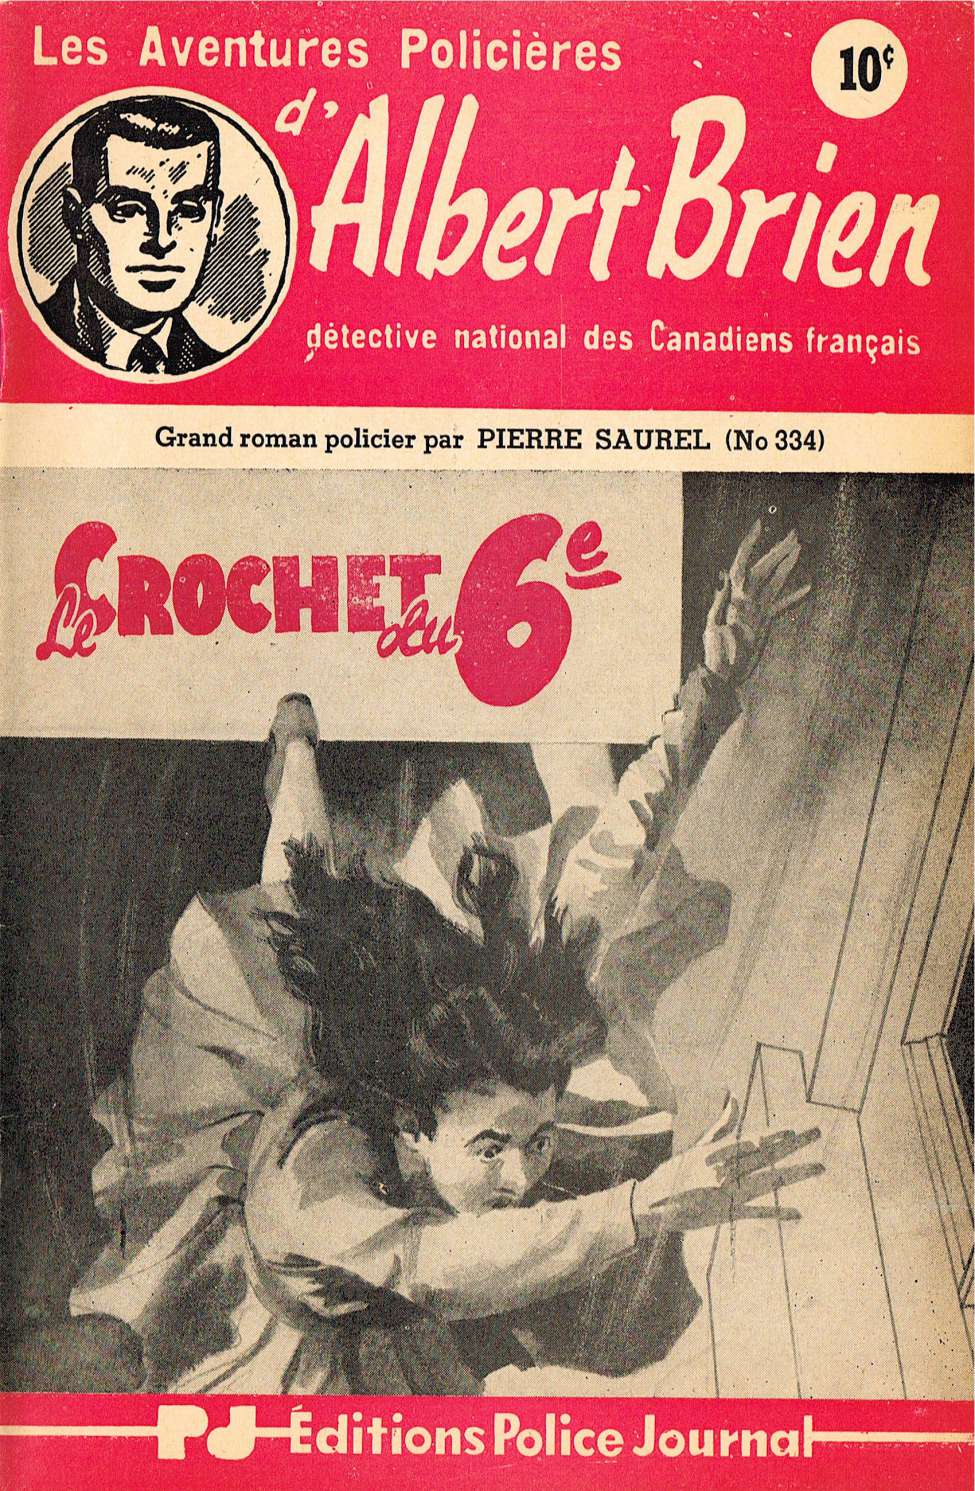 Book Cover For Albert Brien v2 334 - Le Crochet du 6e